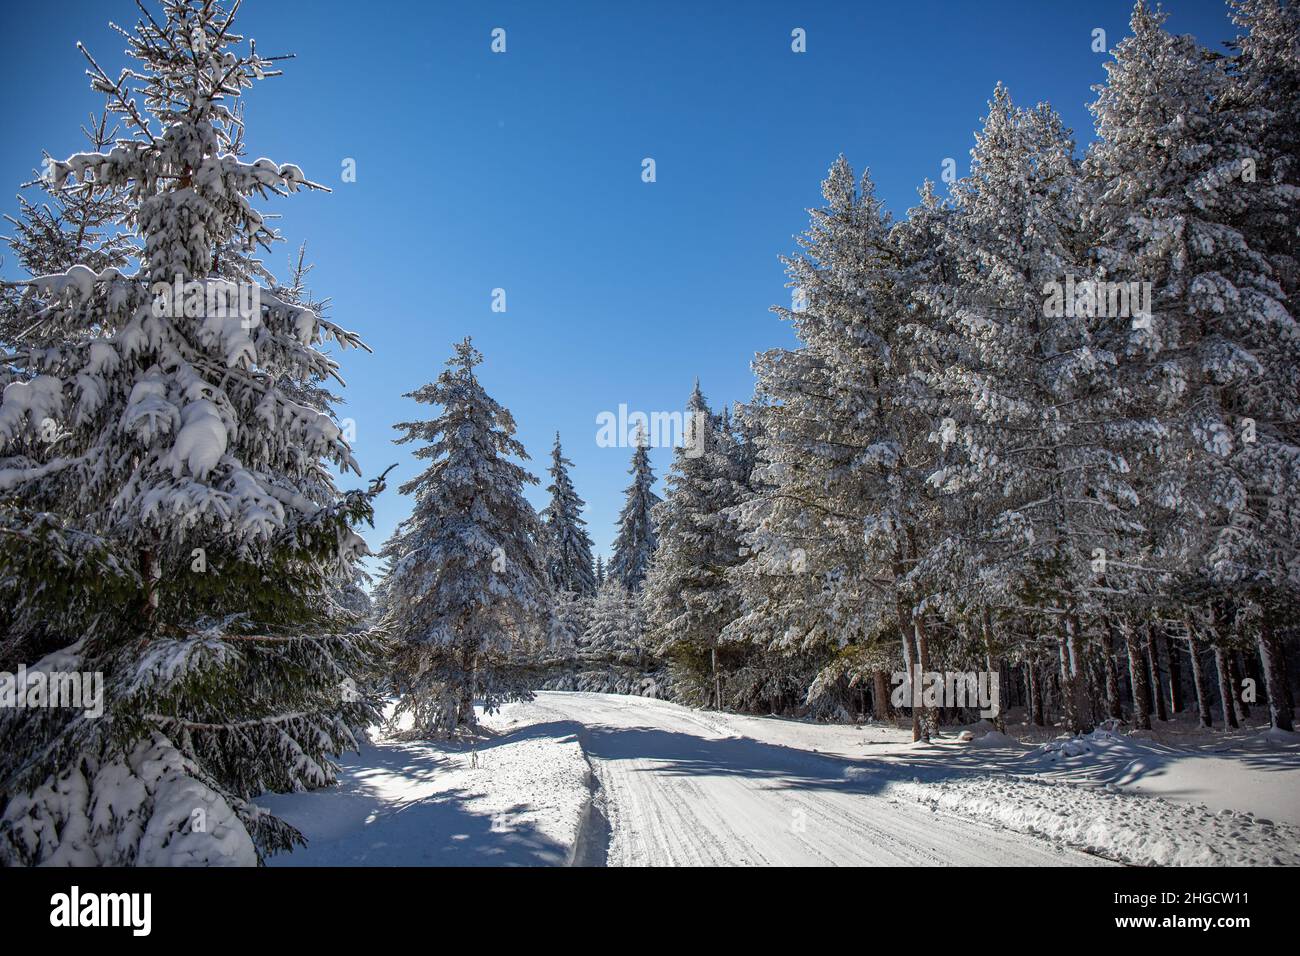 Route de montagne enneigée et pins enneigés lors d'une journée froide d'hiver Banque D'Images